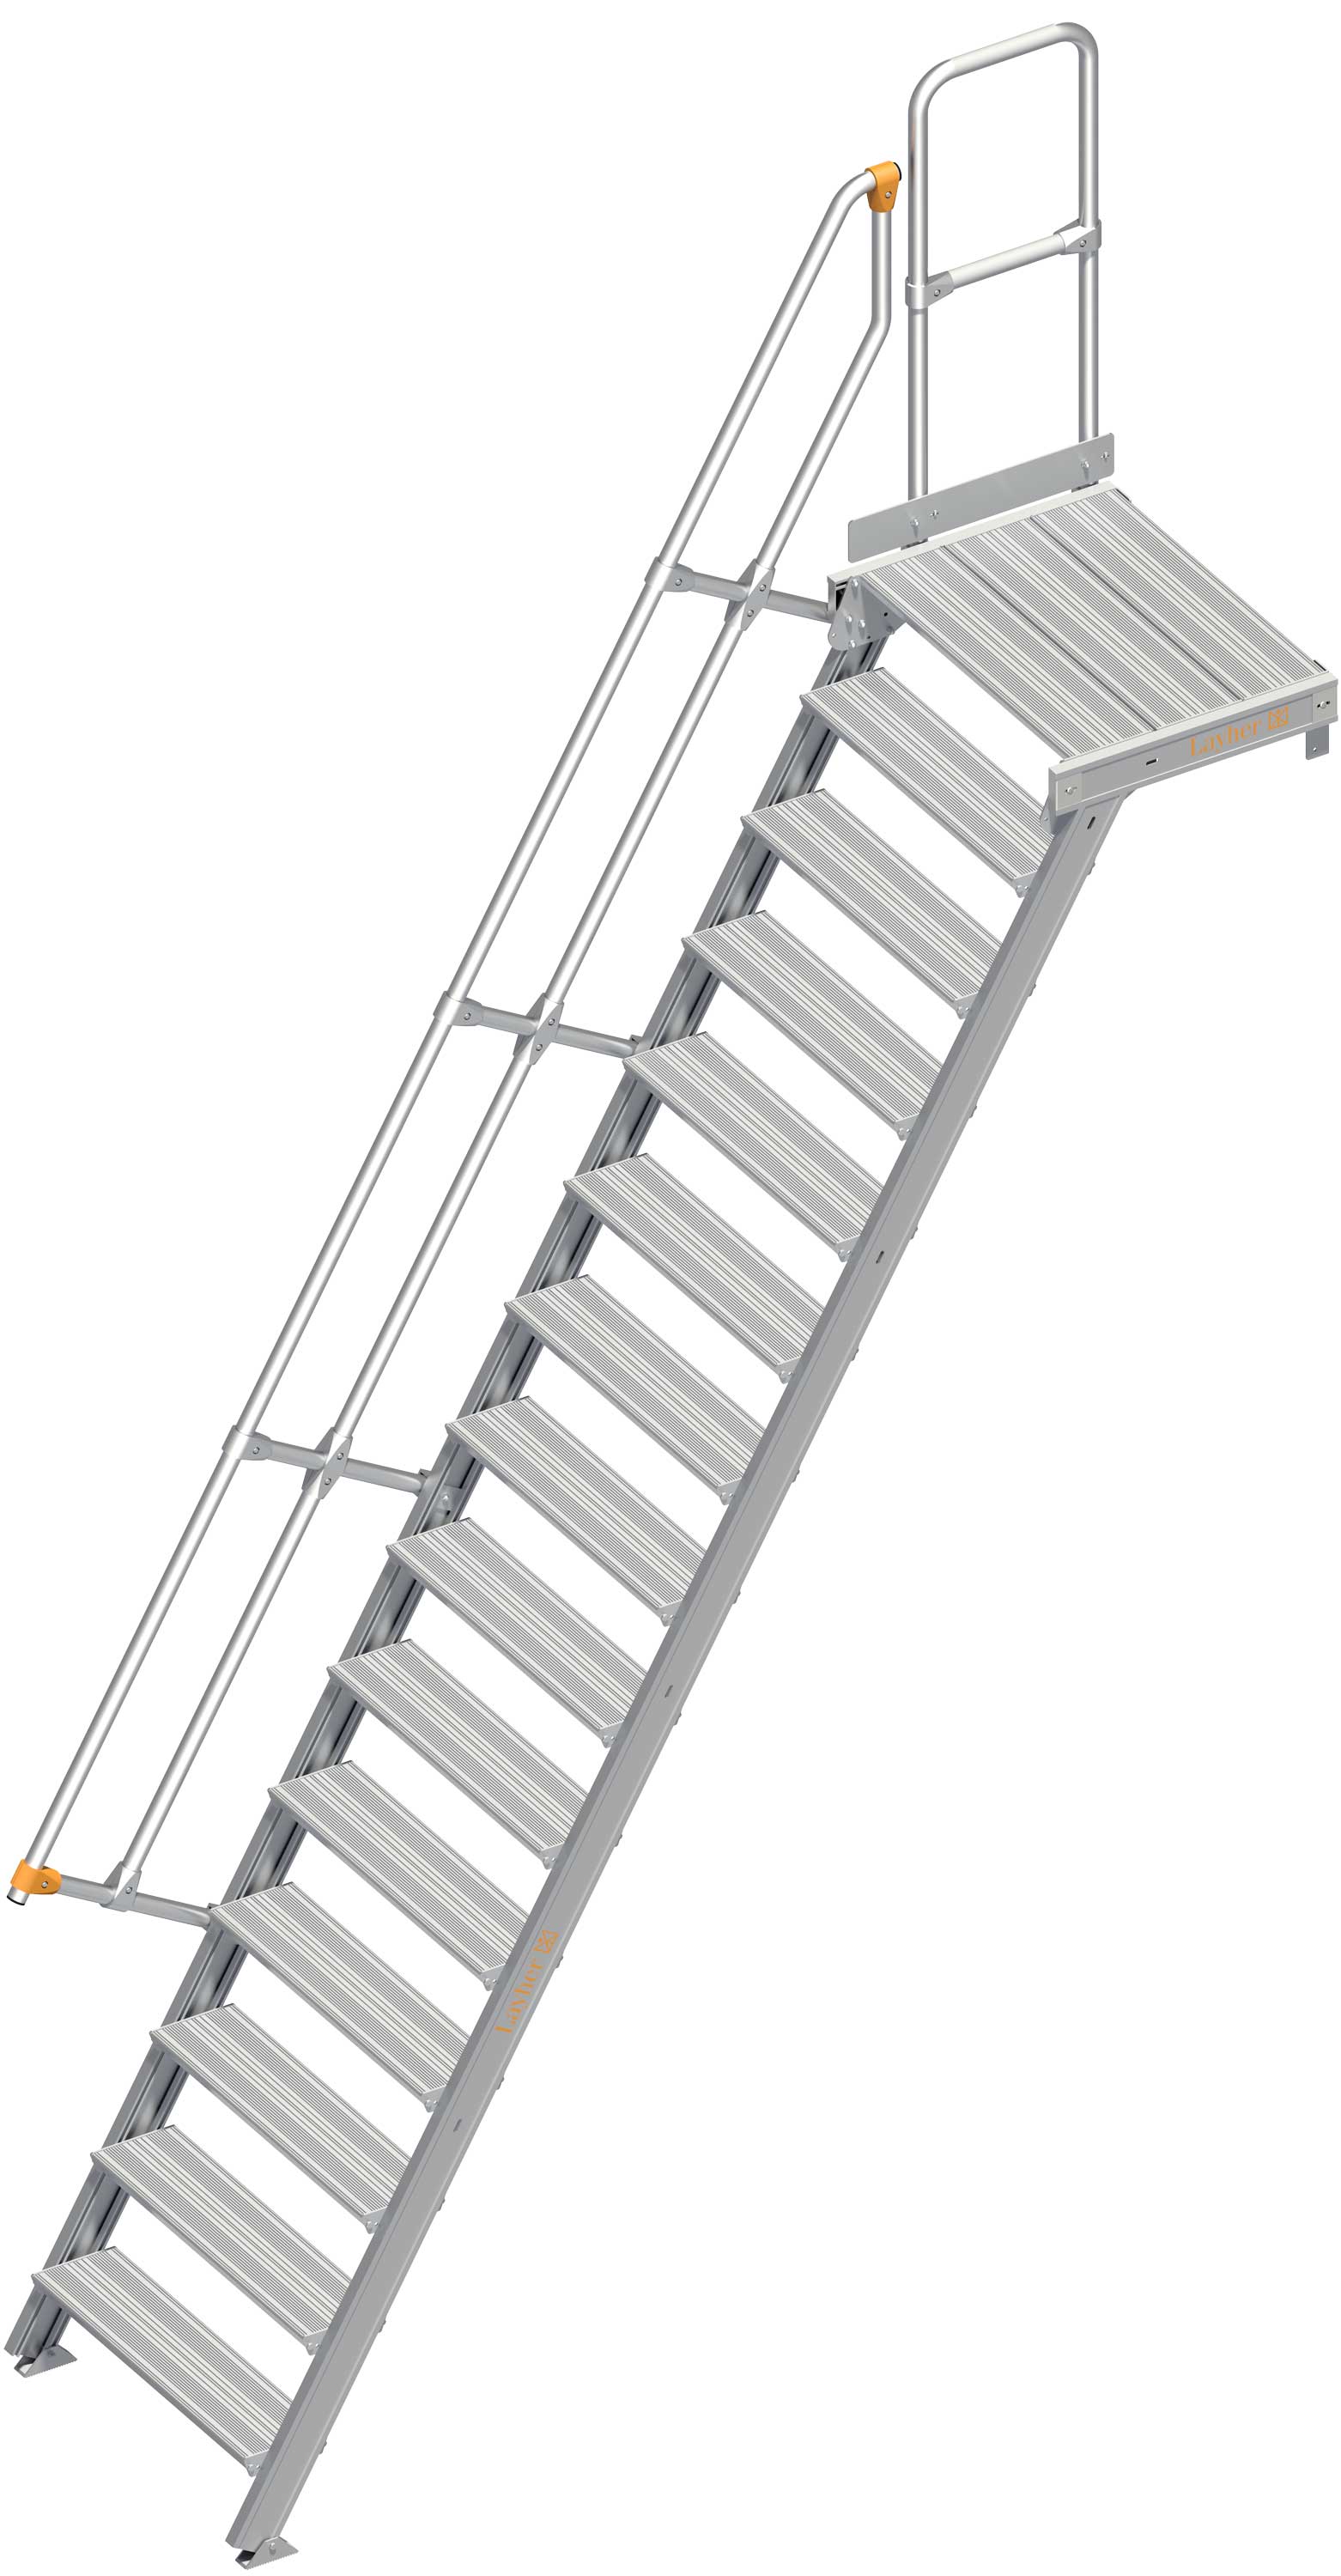 Layher Plattformtreppe 60° 15 Stufen - 800 mm breit